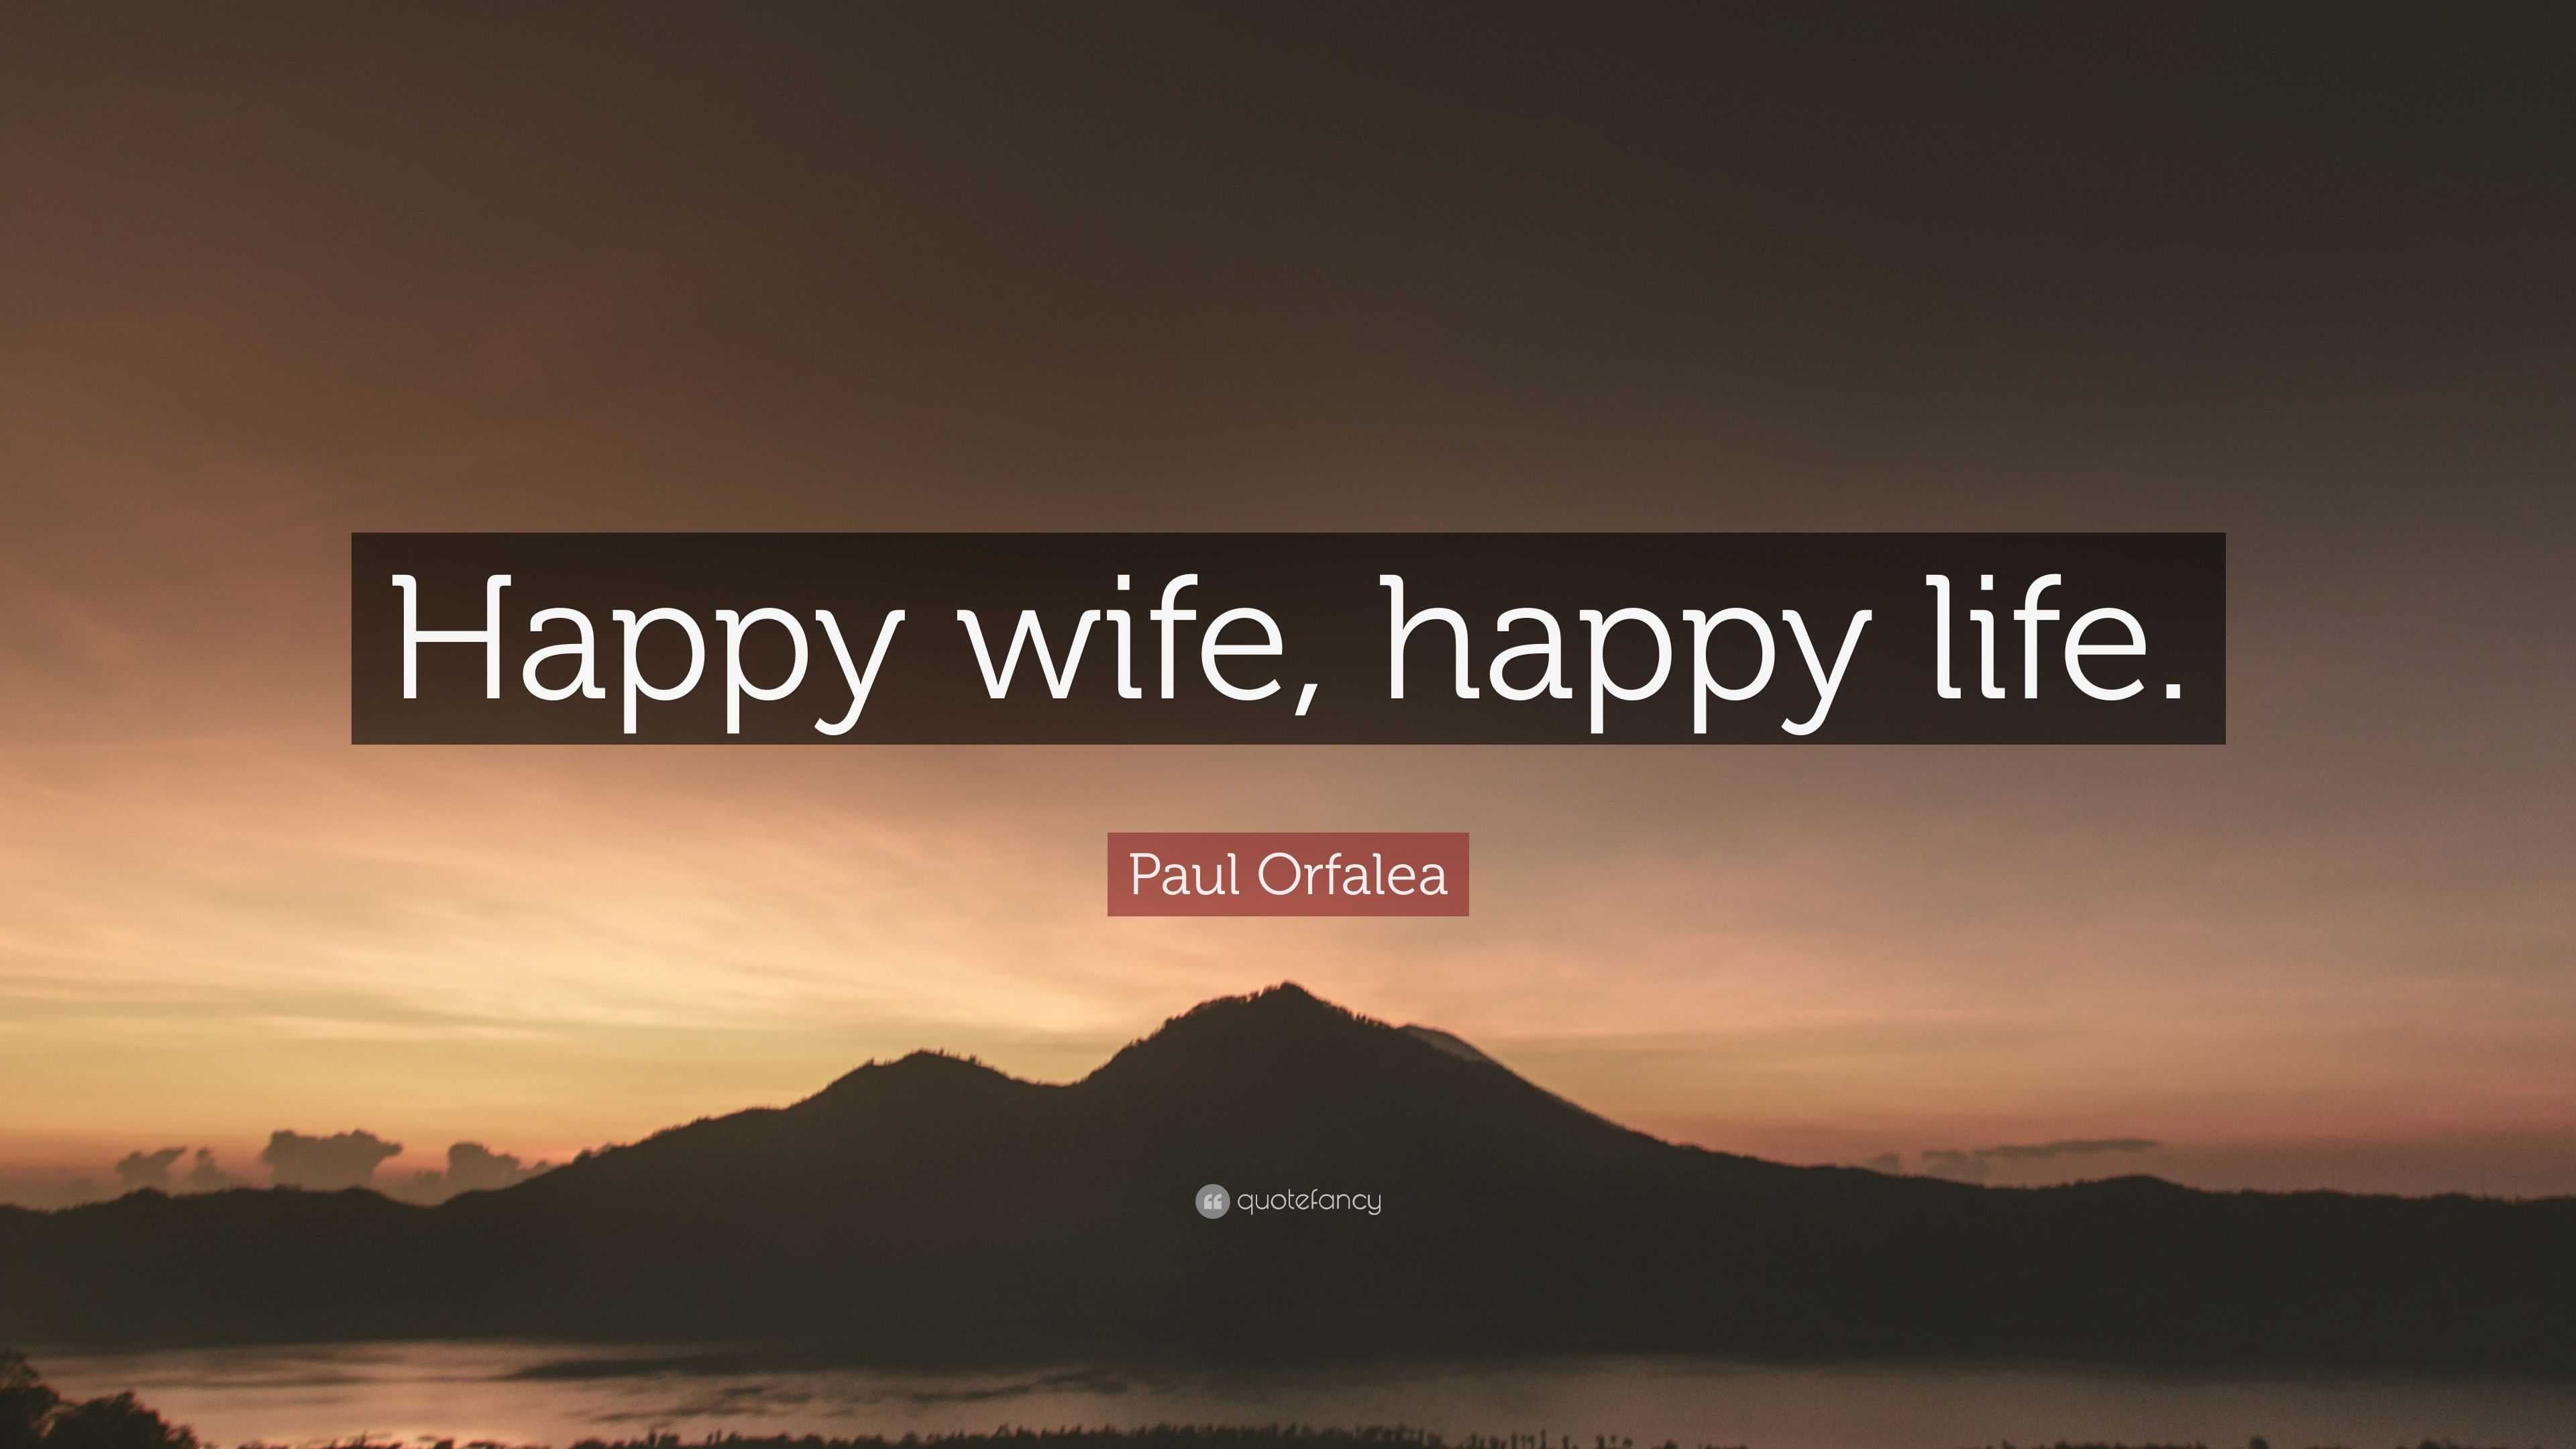 https://quotefancy.com/media/wallpaper/3840x2160/2096795-Paul-Orfalea-Quote-Happy-wife-happy-life.jpg